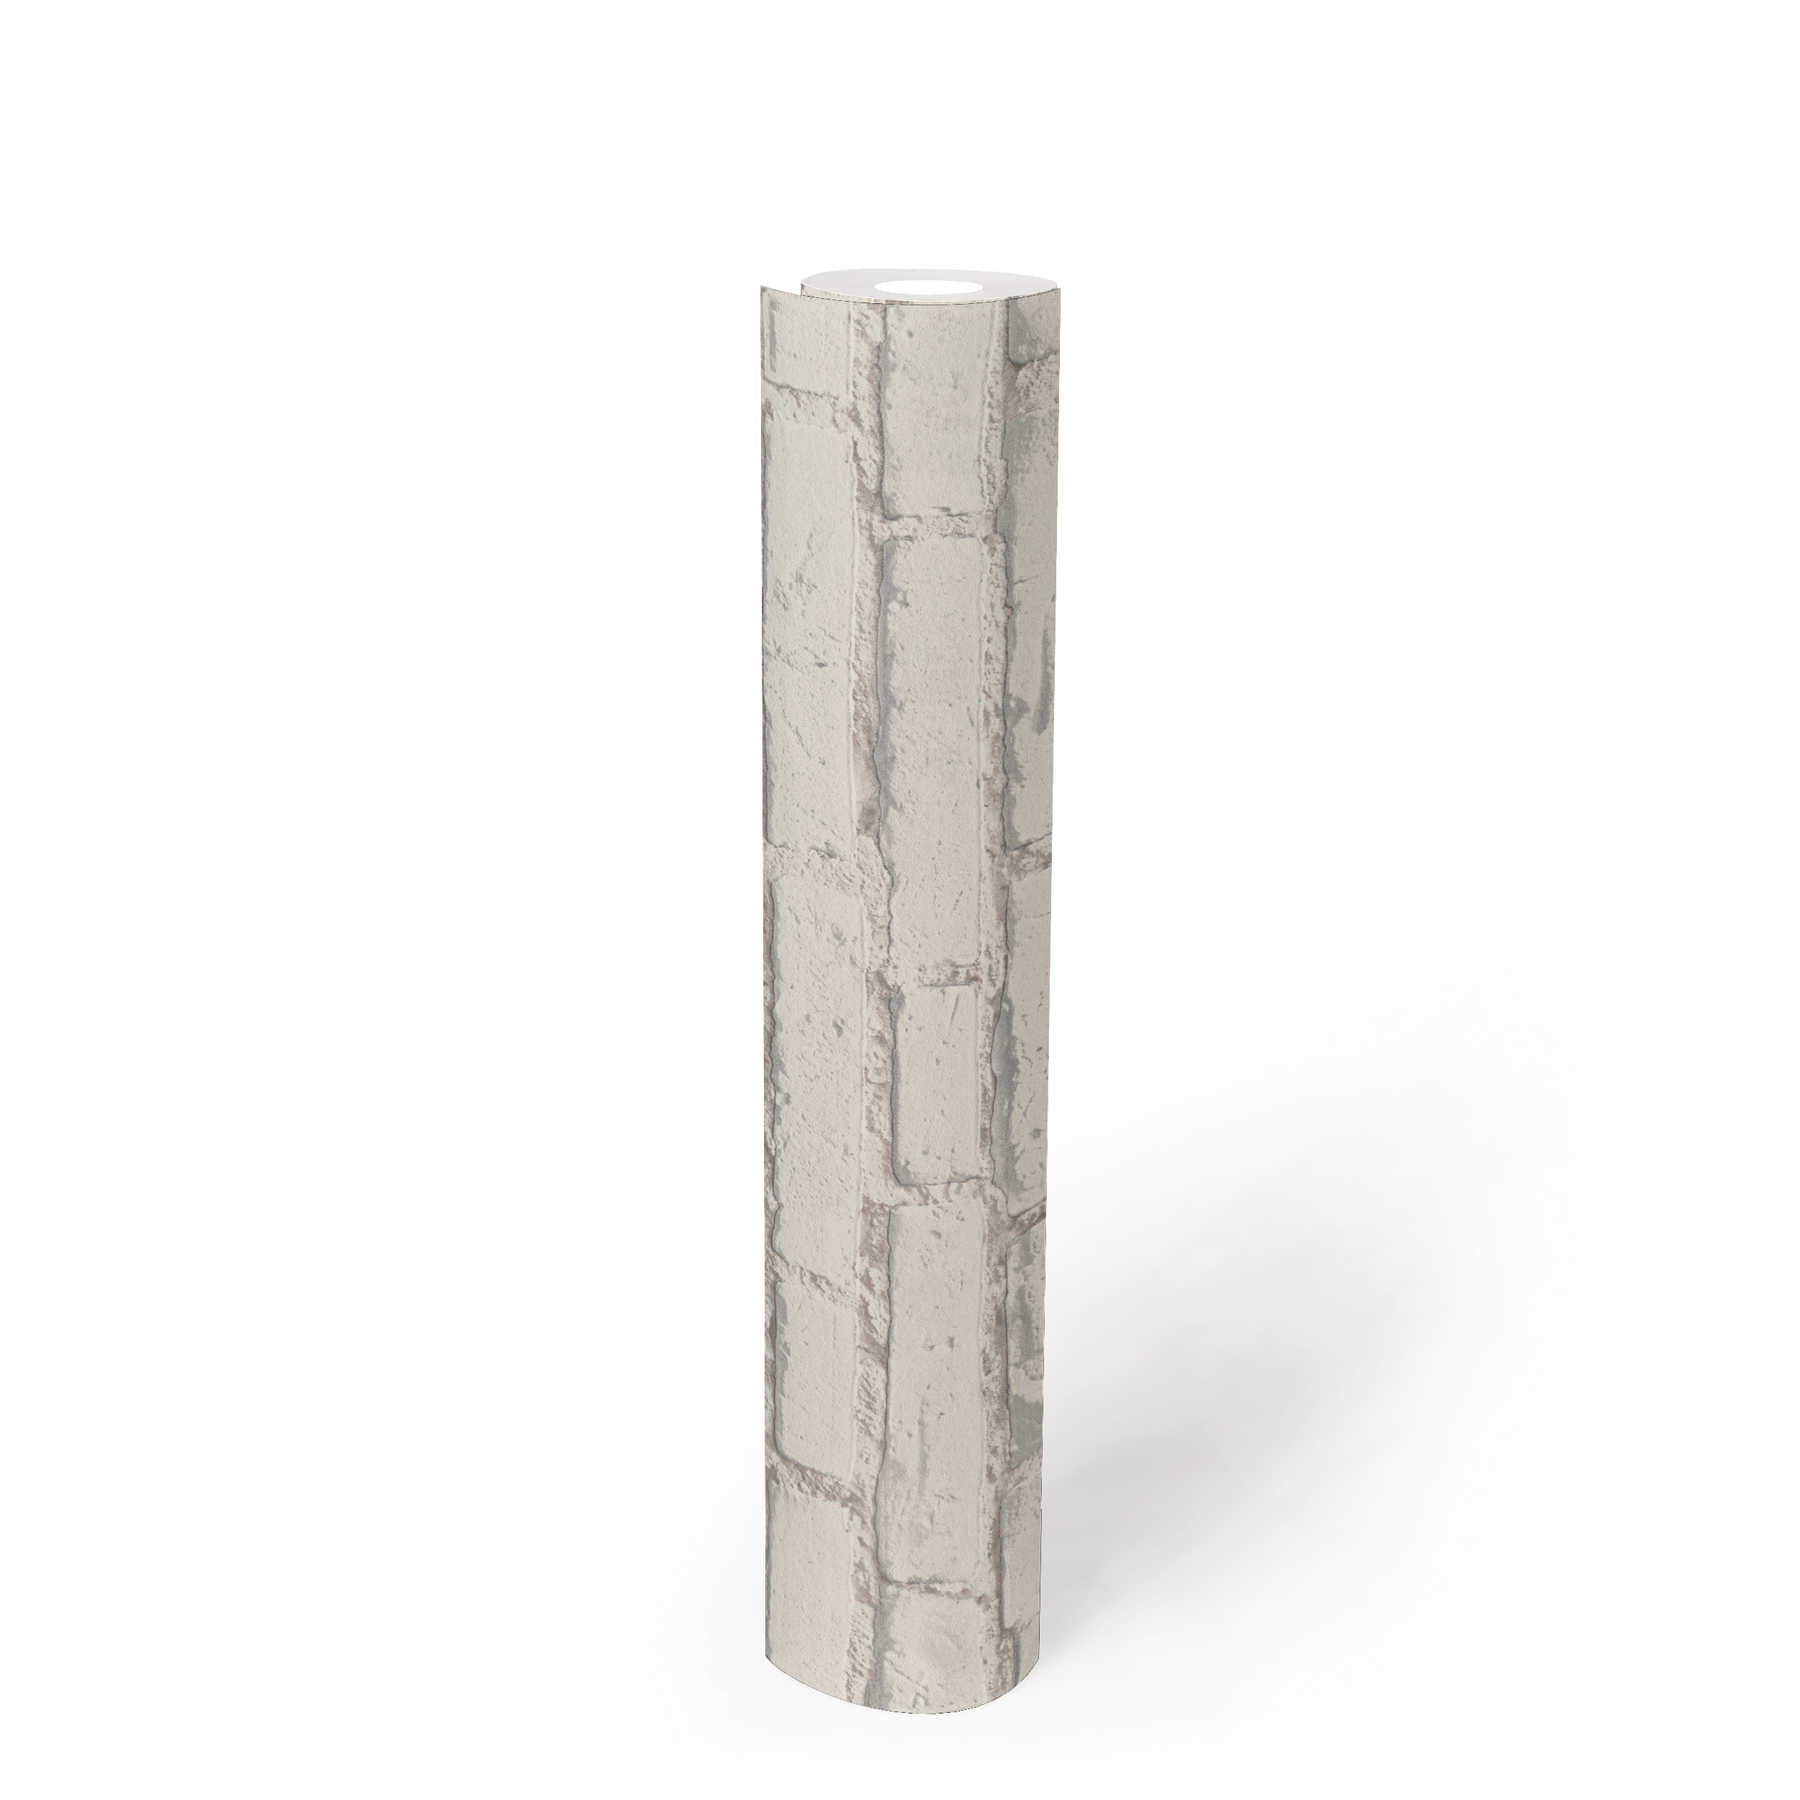             Tapete mit Backsteinmauer mit weißen Steinen und Fugen – Weiß, Grau
        